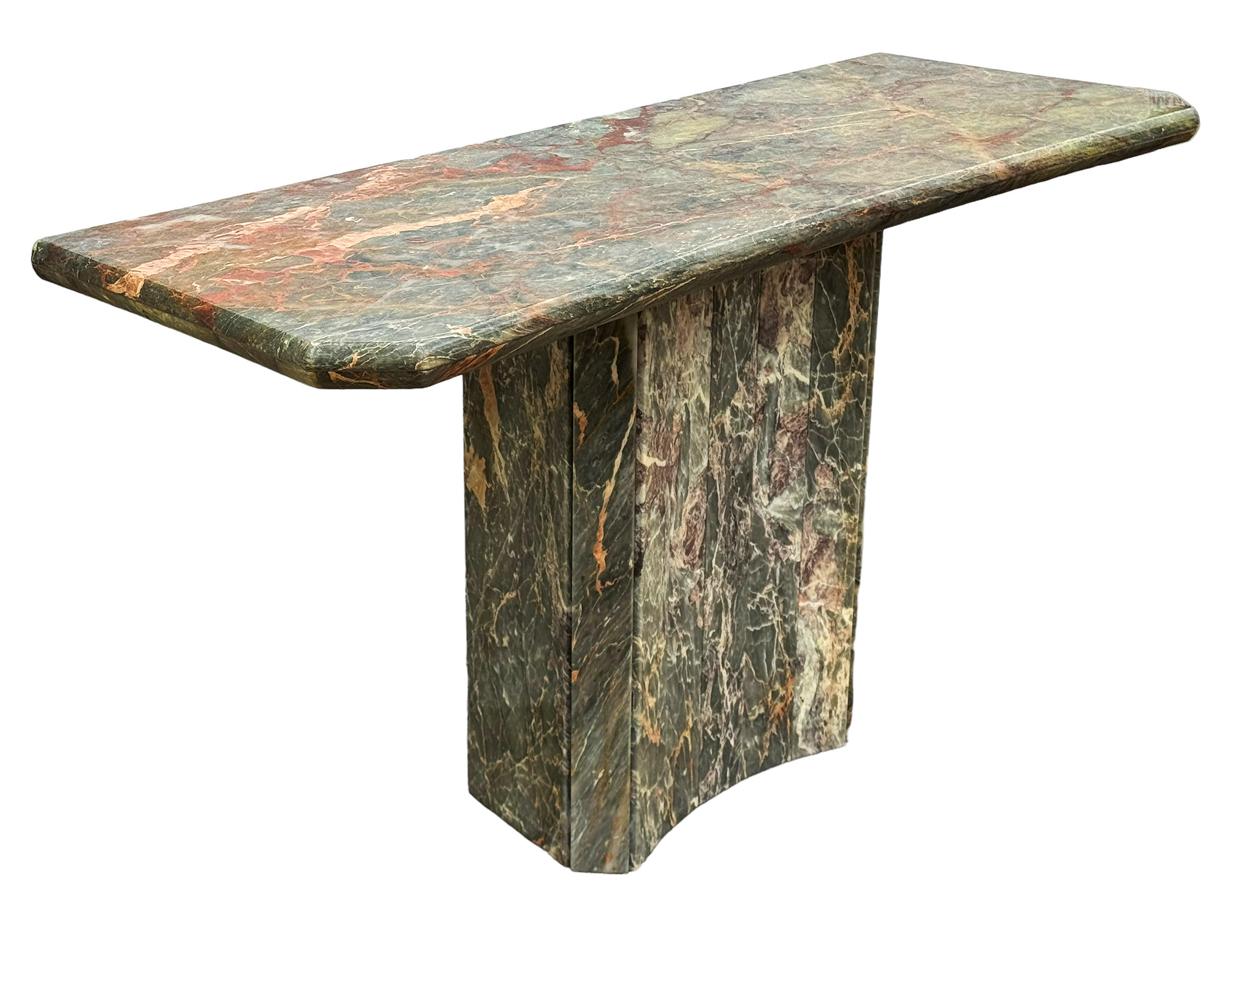 Une superbe table console moderne et simple provenant d'Italie vers les années 1970. Il s'agit de lourdes  marbre massif dans une gamme de couleurs. Magnifique veinage dans le marbre et la table a un front arqué. 